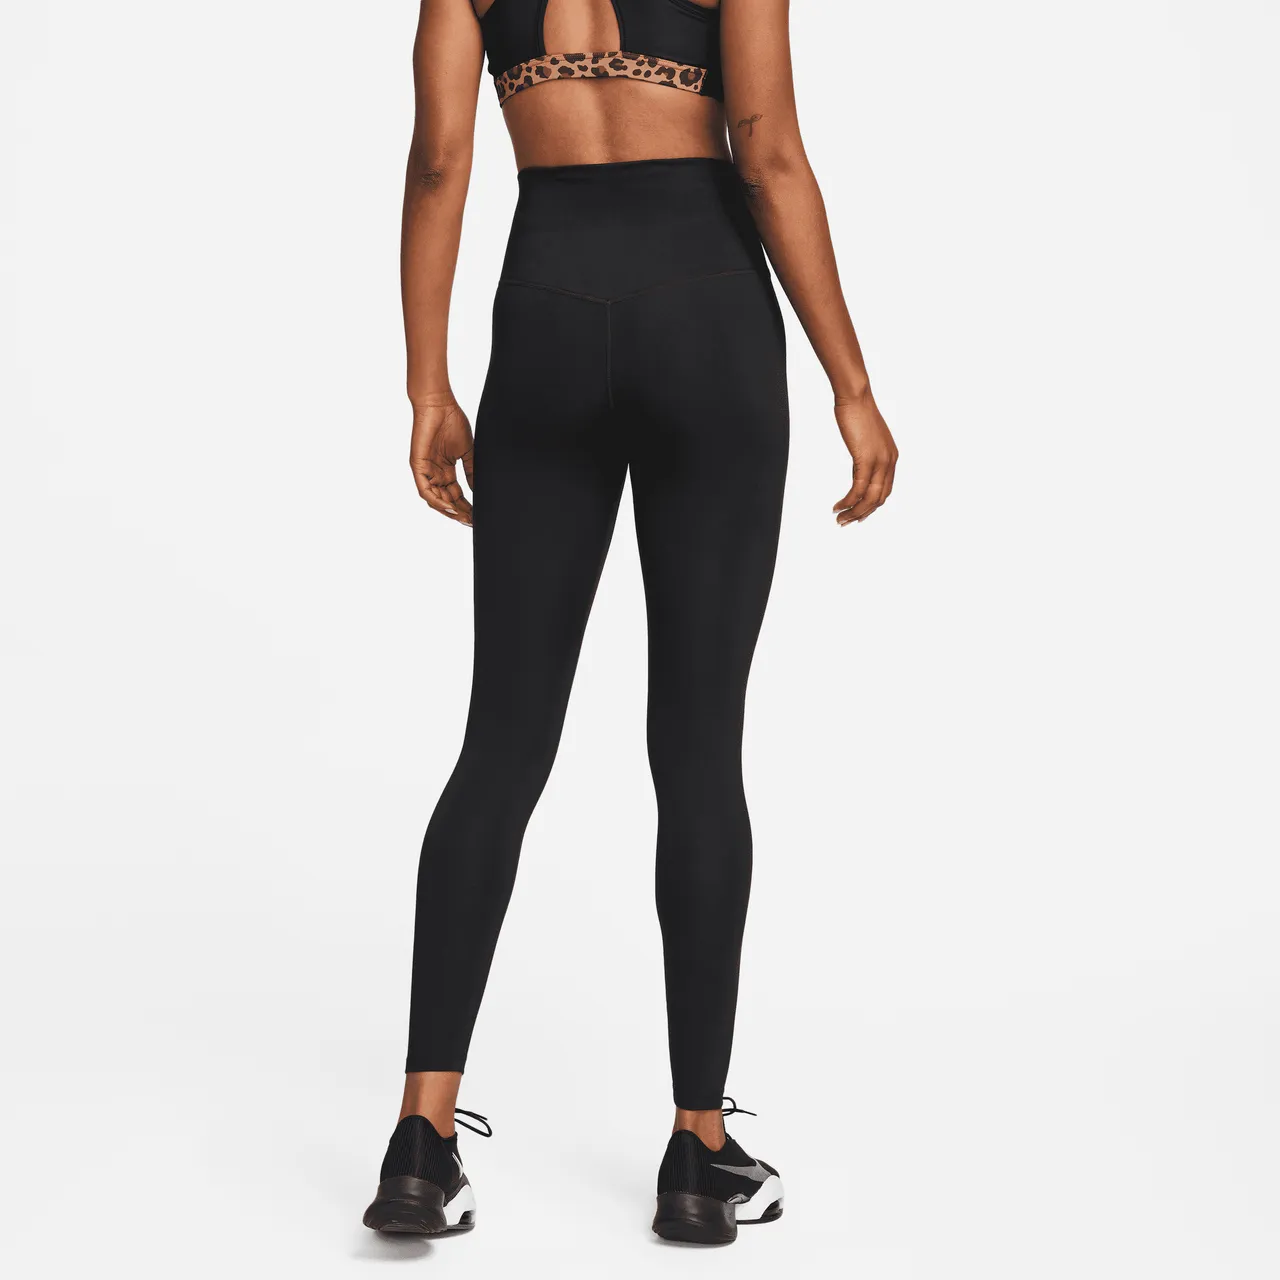 Nike One Women's High-Rise Leggings - Black - Polyester